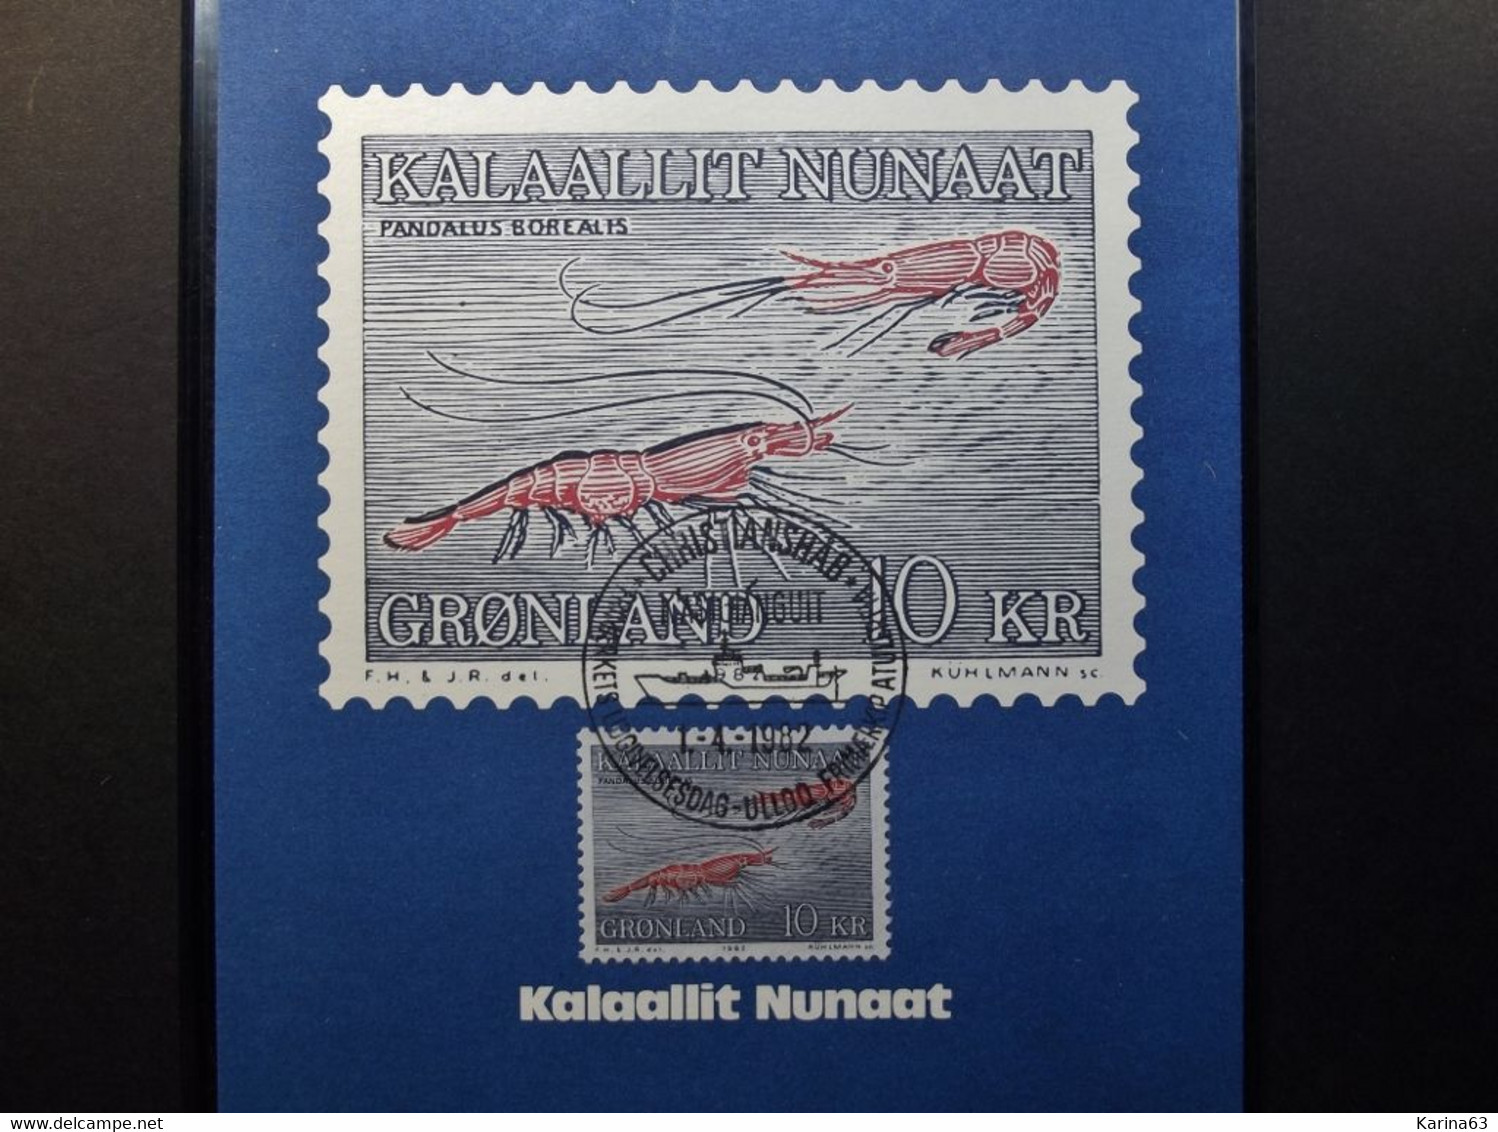 Greenland - Gronland  - 1982 -  Mi 133 Maximum Maxima Card - Fish Shrimp  - Pandalus Borealis - 1 April 1982 - Maximumkarten (MC)